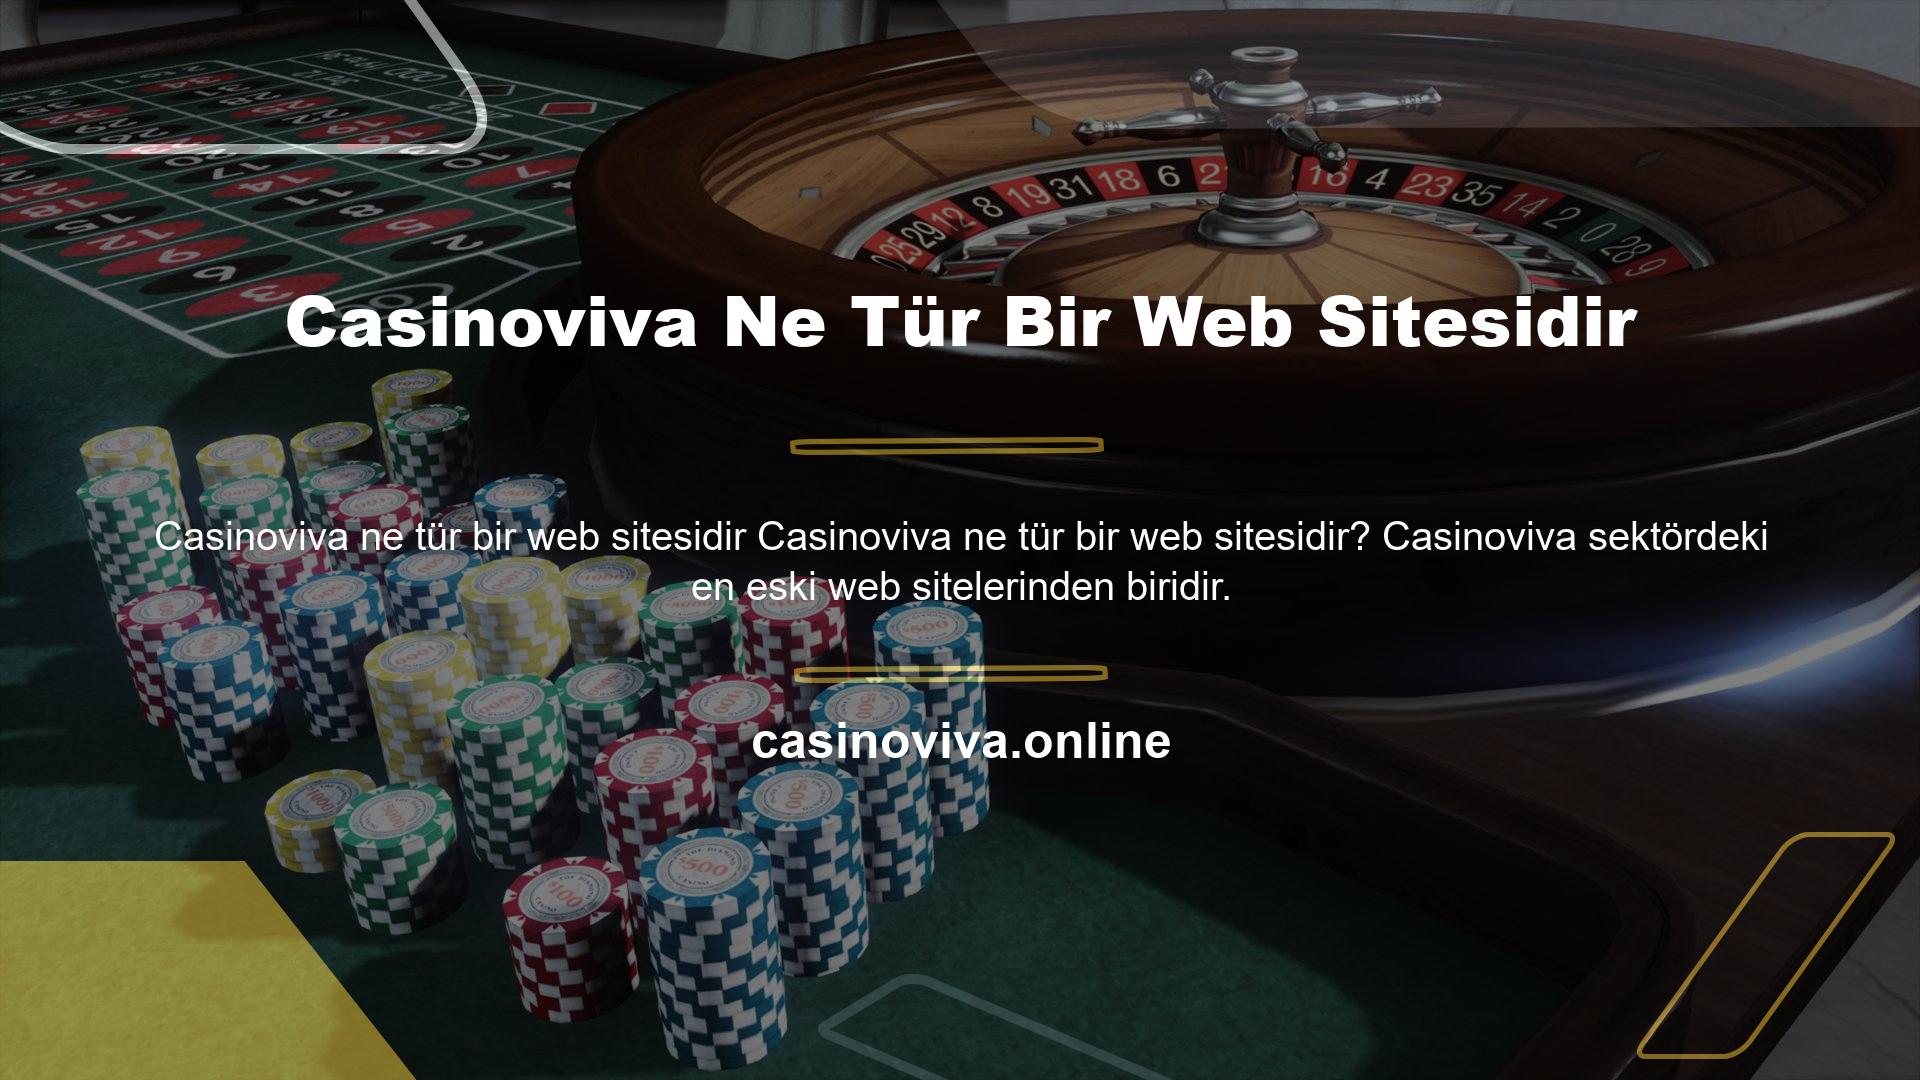 Casinoviva ne tür bir web sitesidir